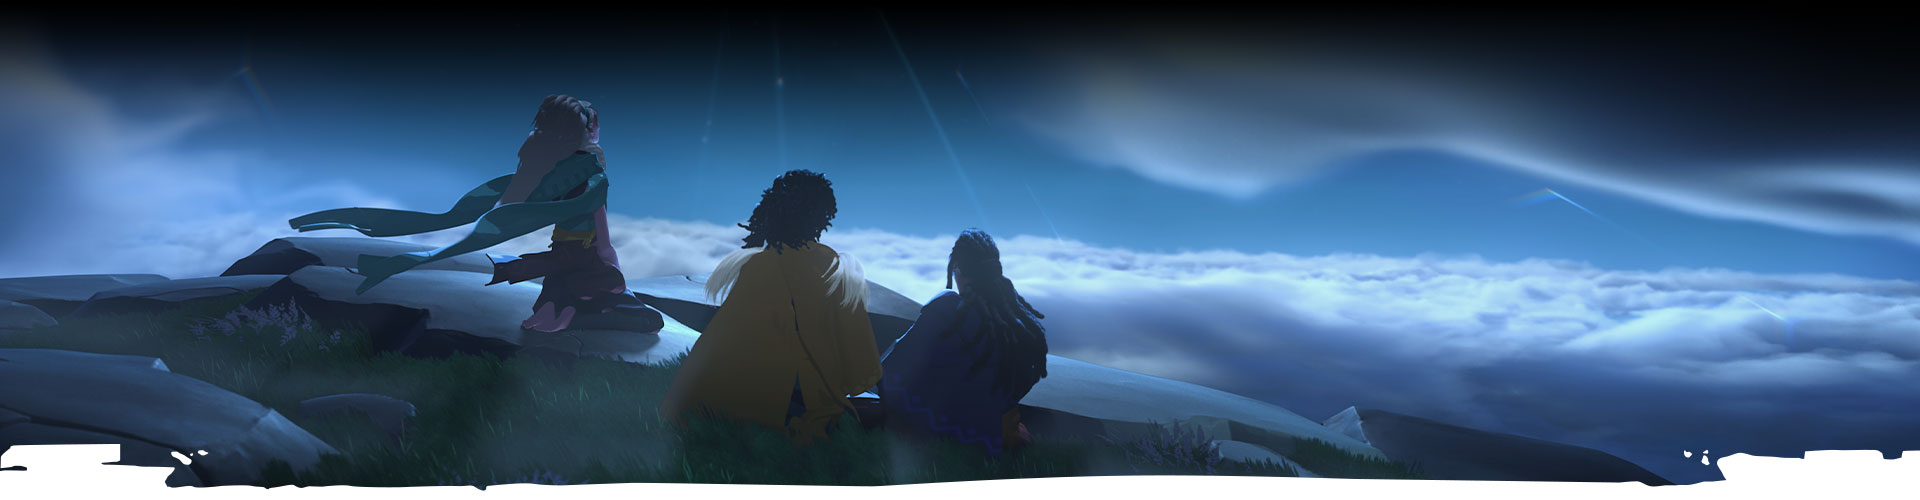 Três personagens olham para o céu noturno. 